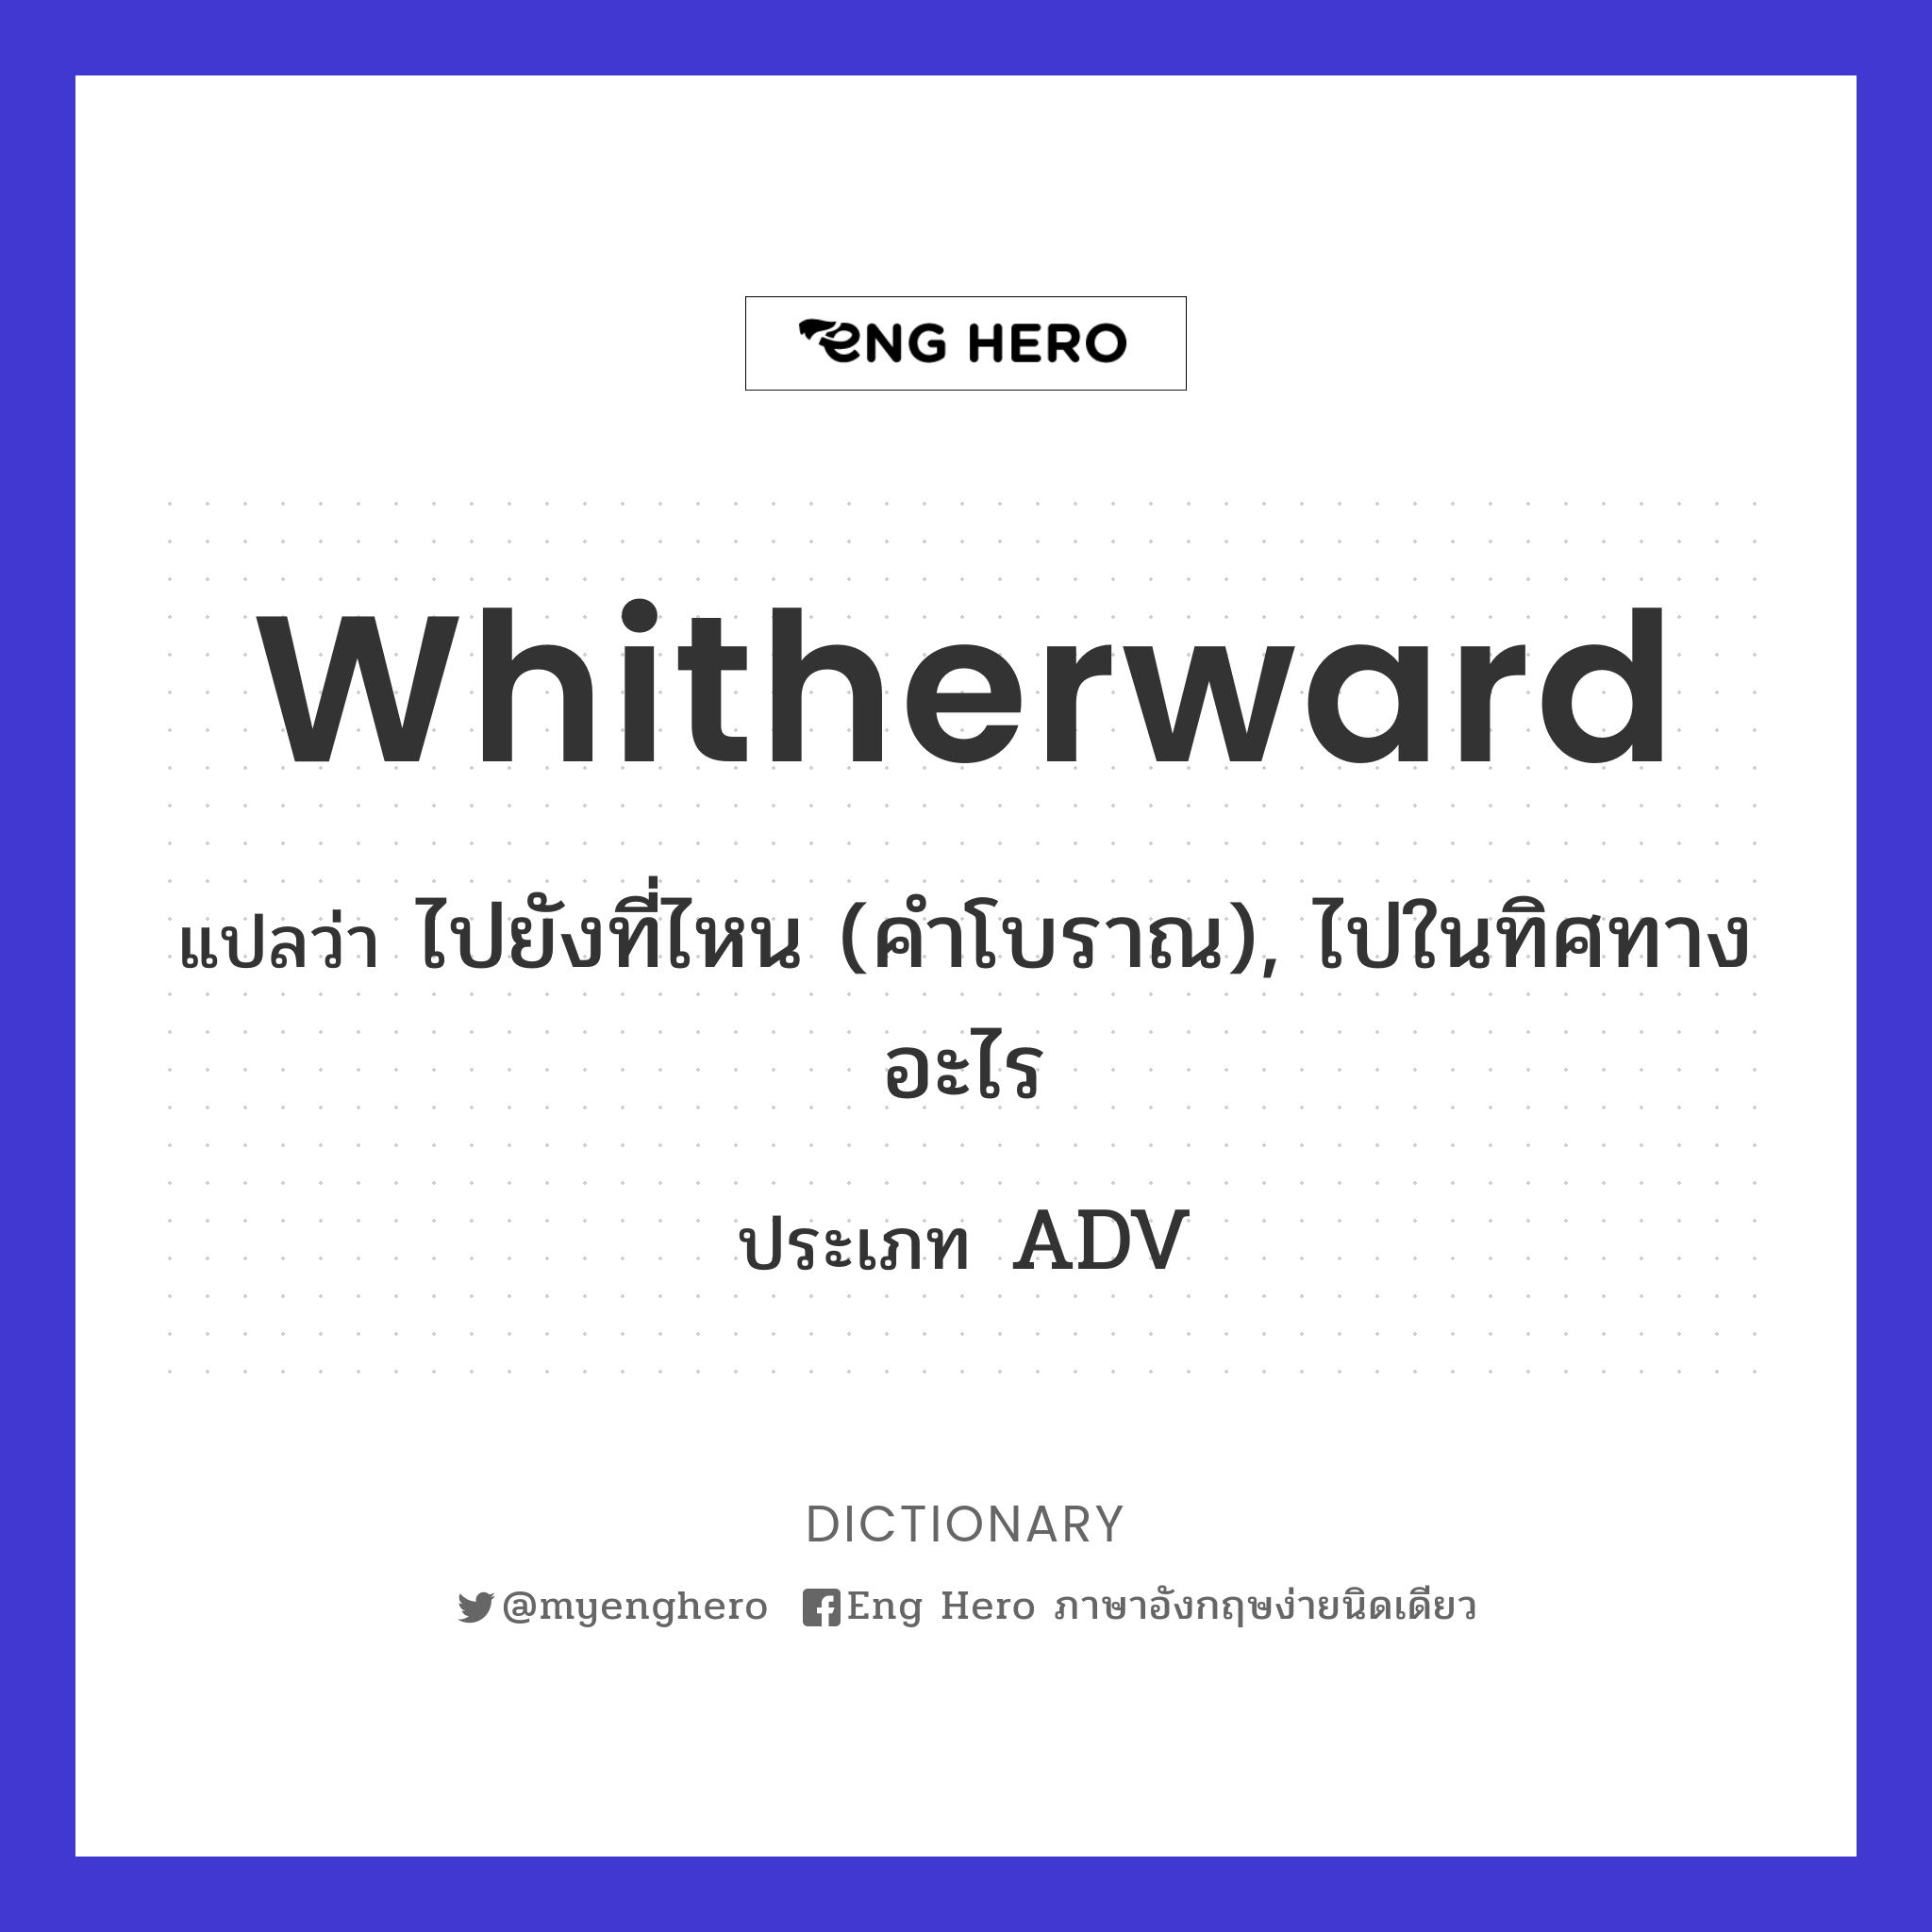 whitherward